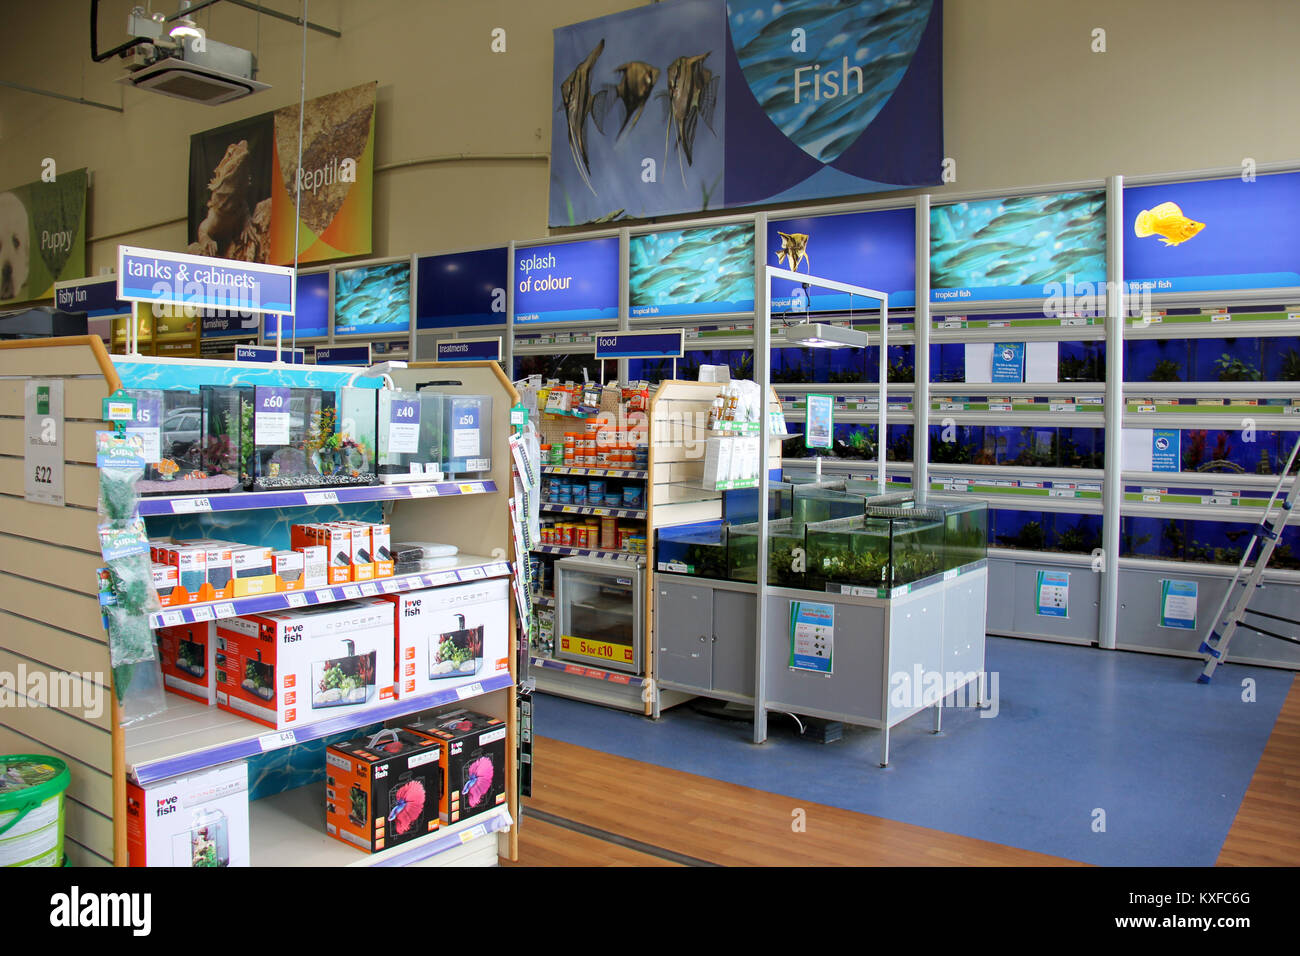 Inghilterra, Kent, Orpington - Circa il luglio 2014: Tropicale e acqua fredda il pesce per la vendita, anche apparecchiature e prodotti alimentari in vendita in un supermercato di pet in Inghilterra. Foto Stock